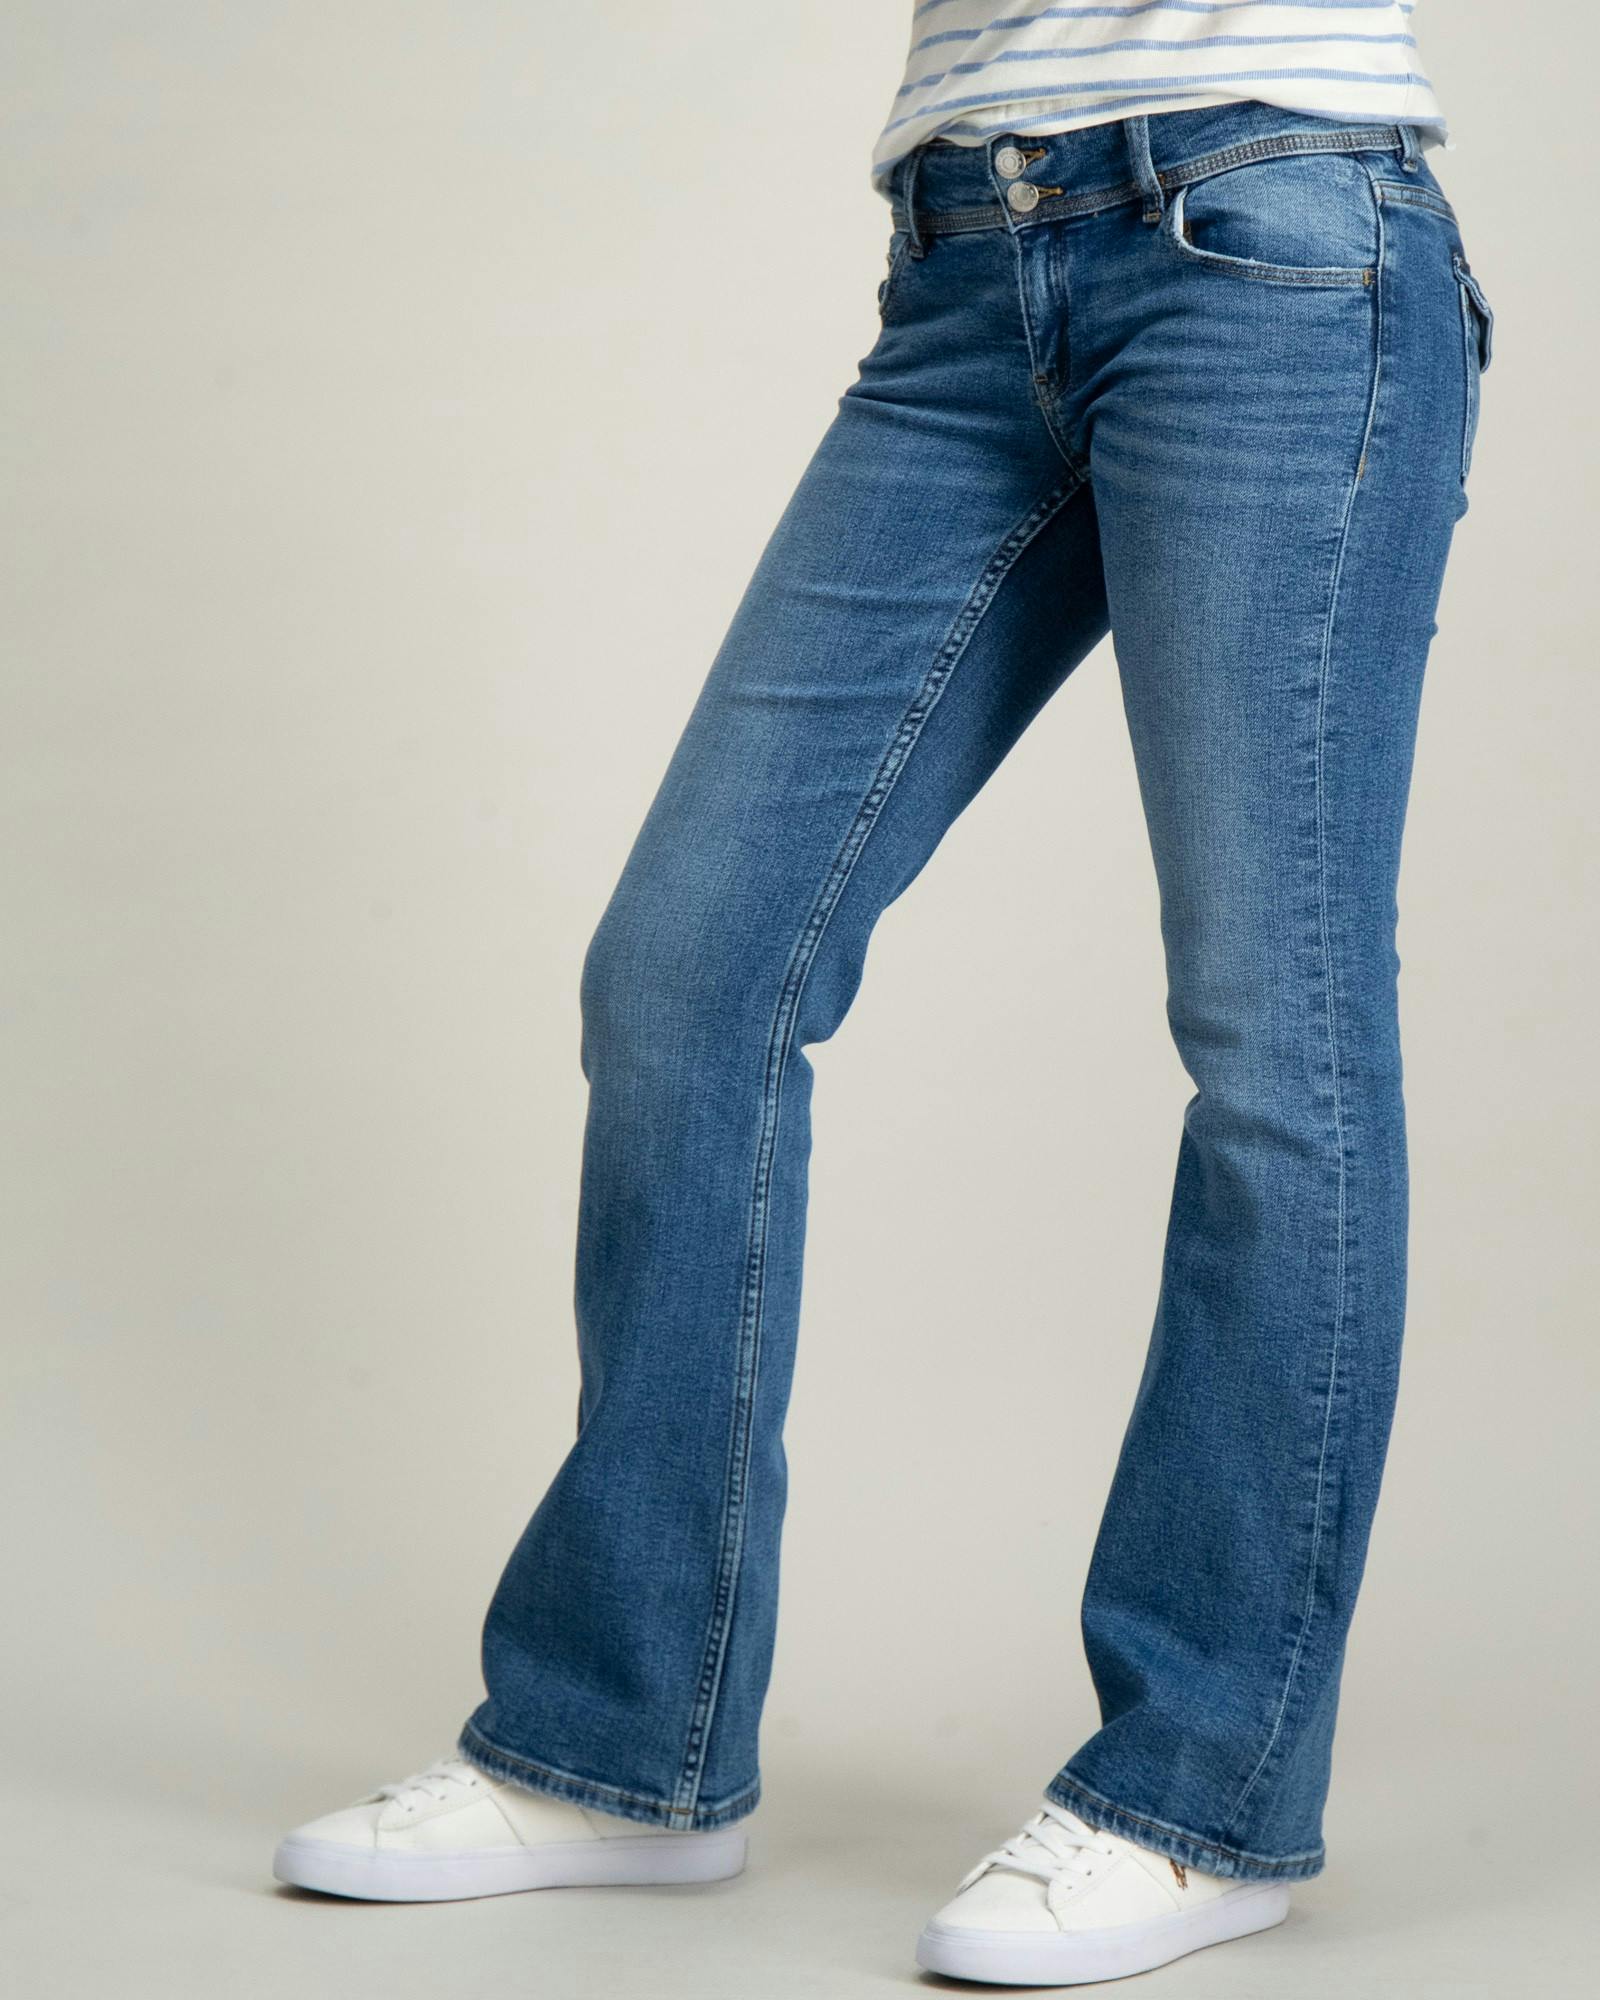 Flare pocket jeans